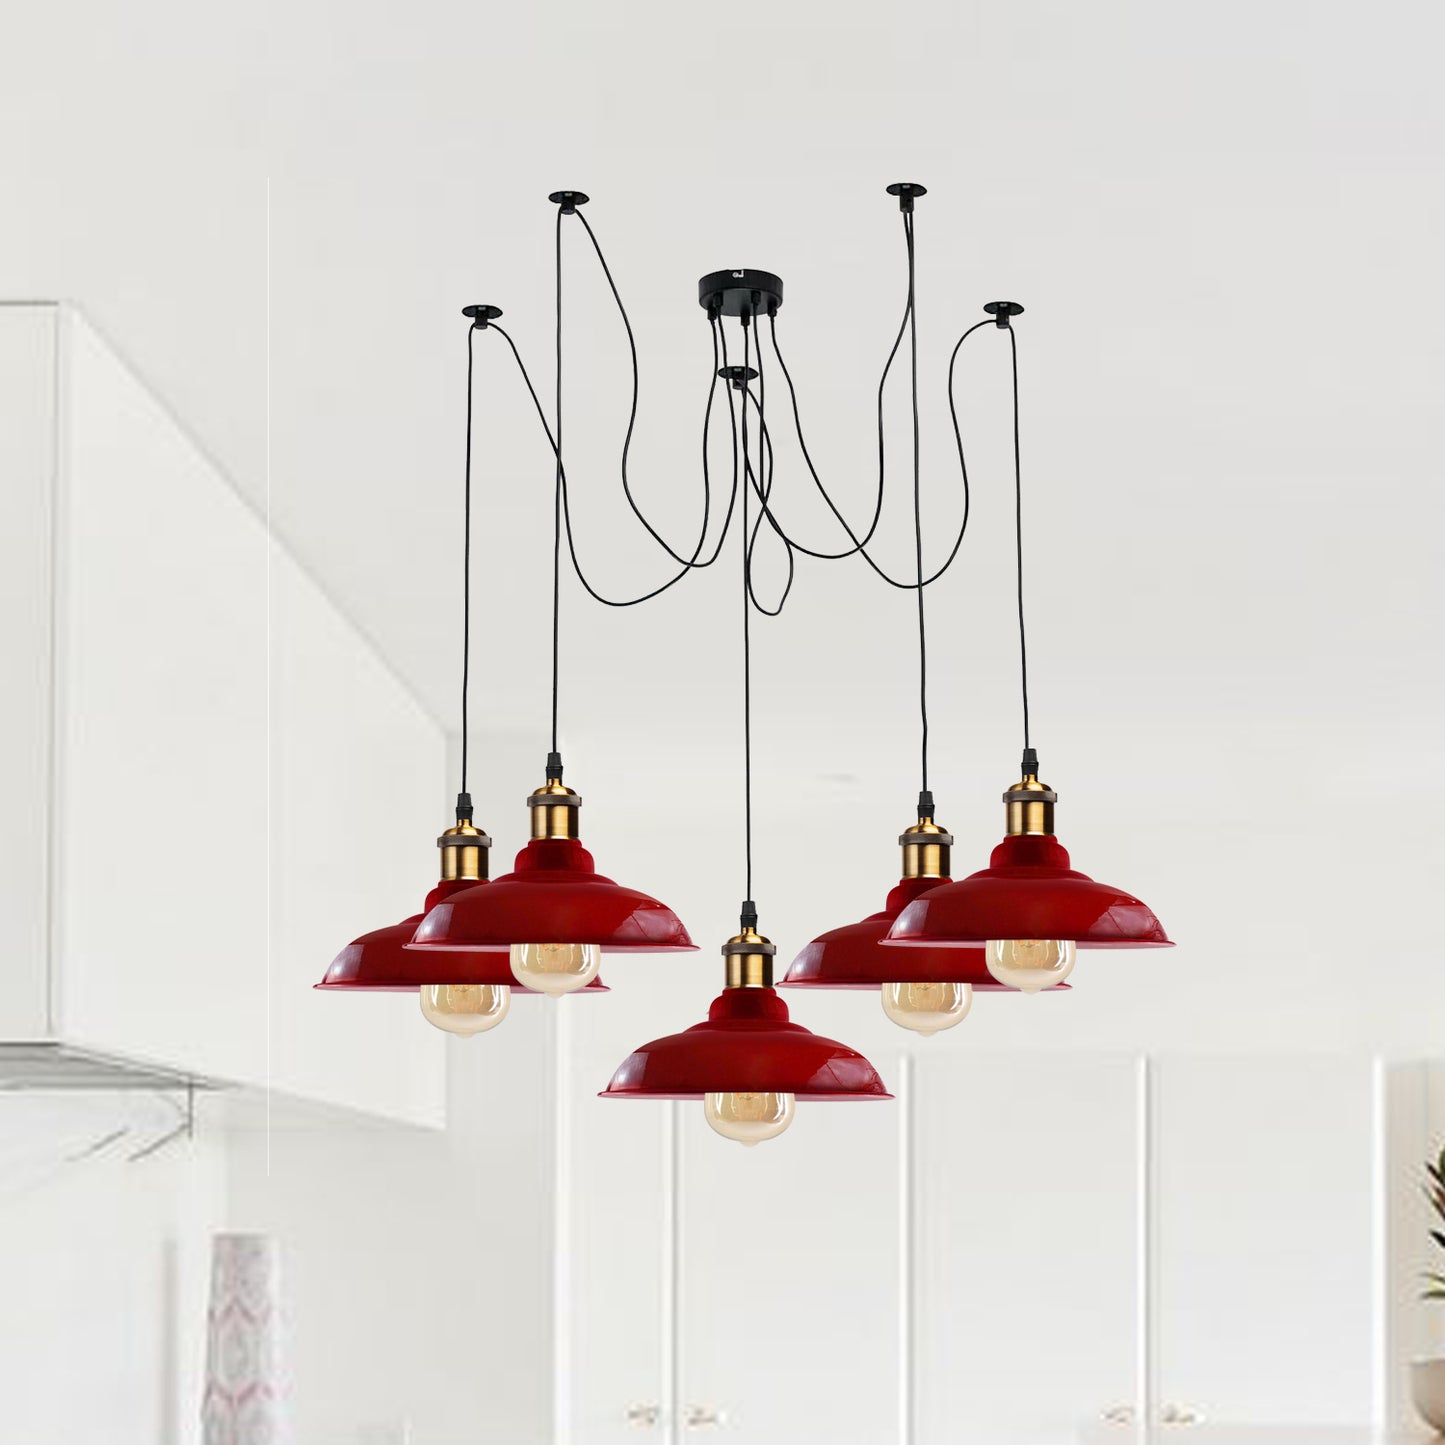 5 Way Vintage Chandelier Spider Ceiling Indoor Lamp Fixture Metal Curvy Shade Red~2212